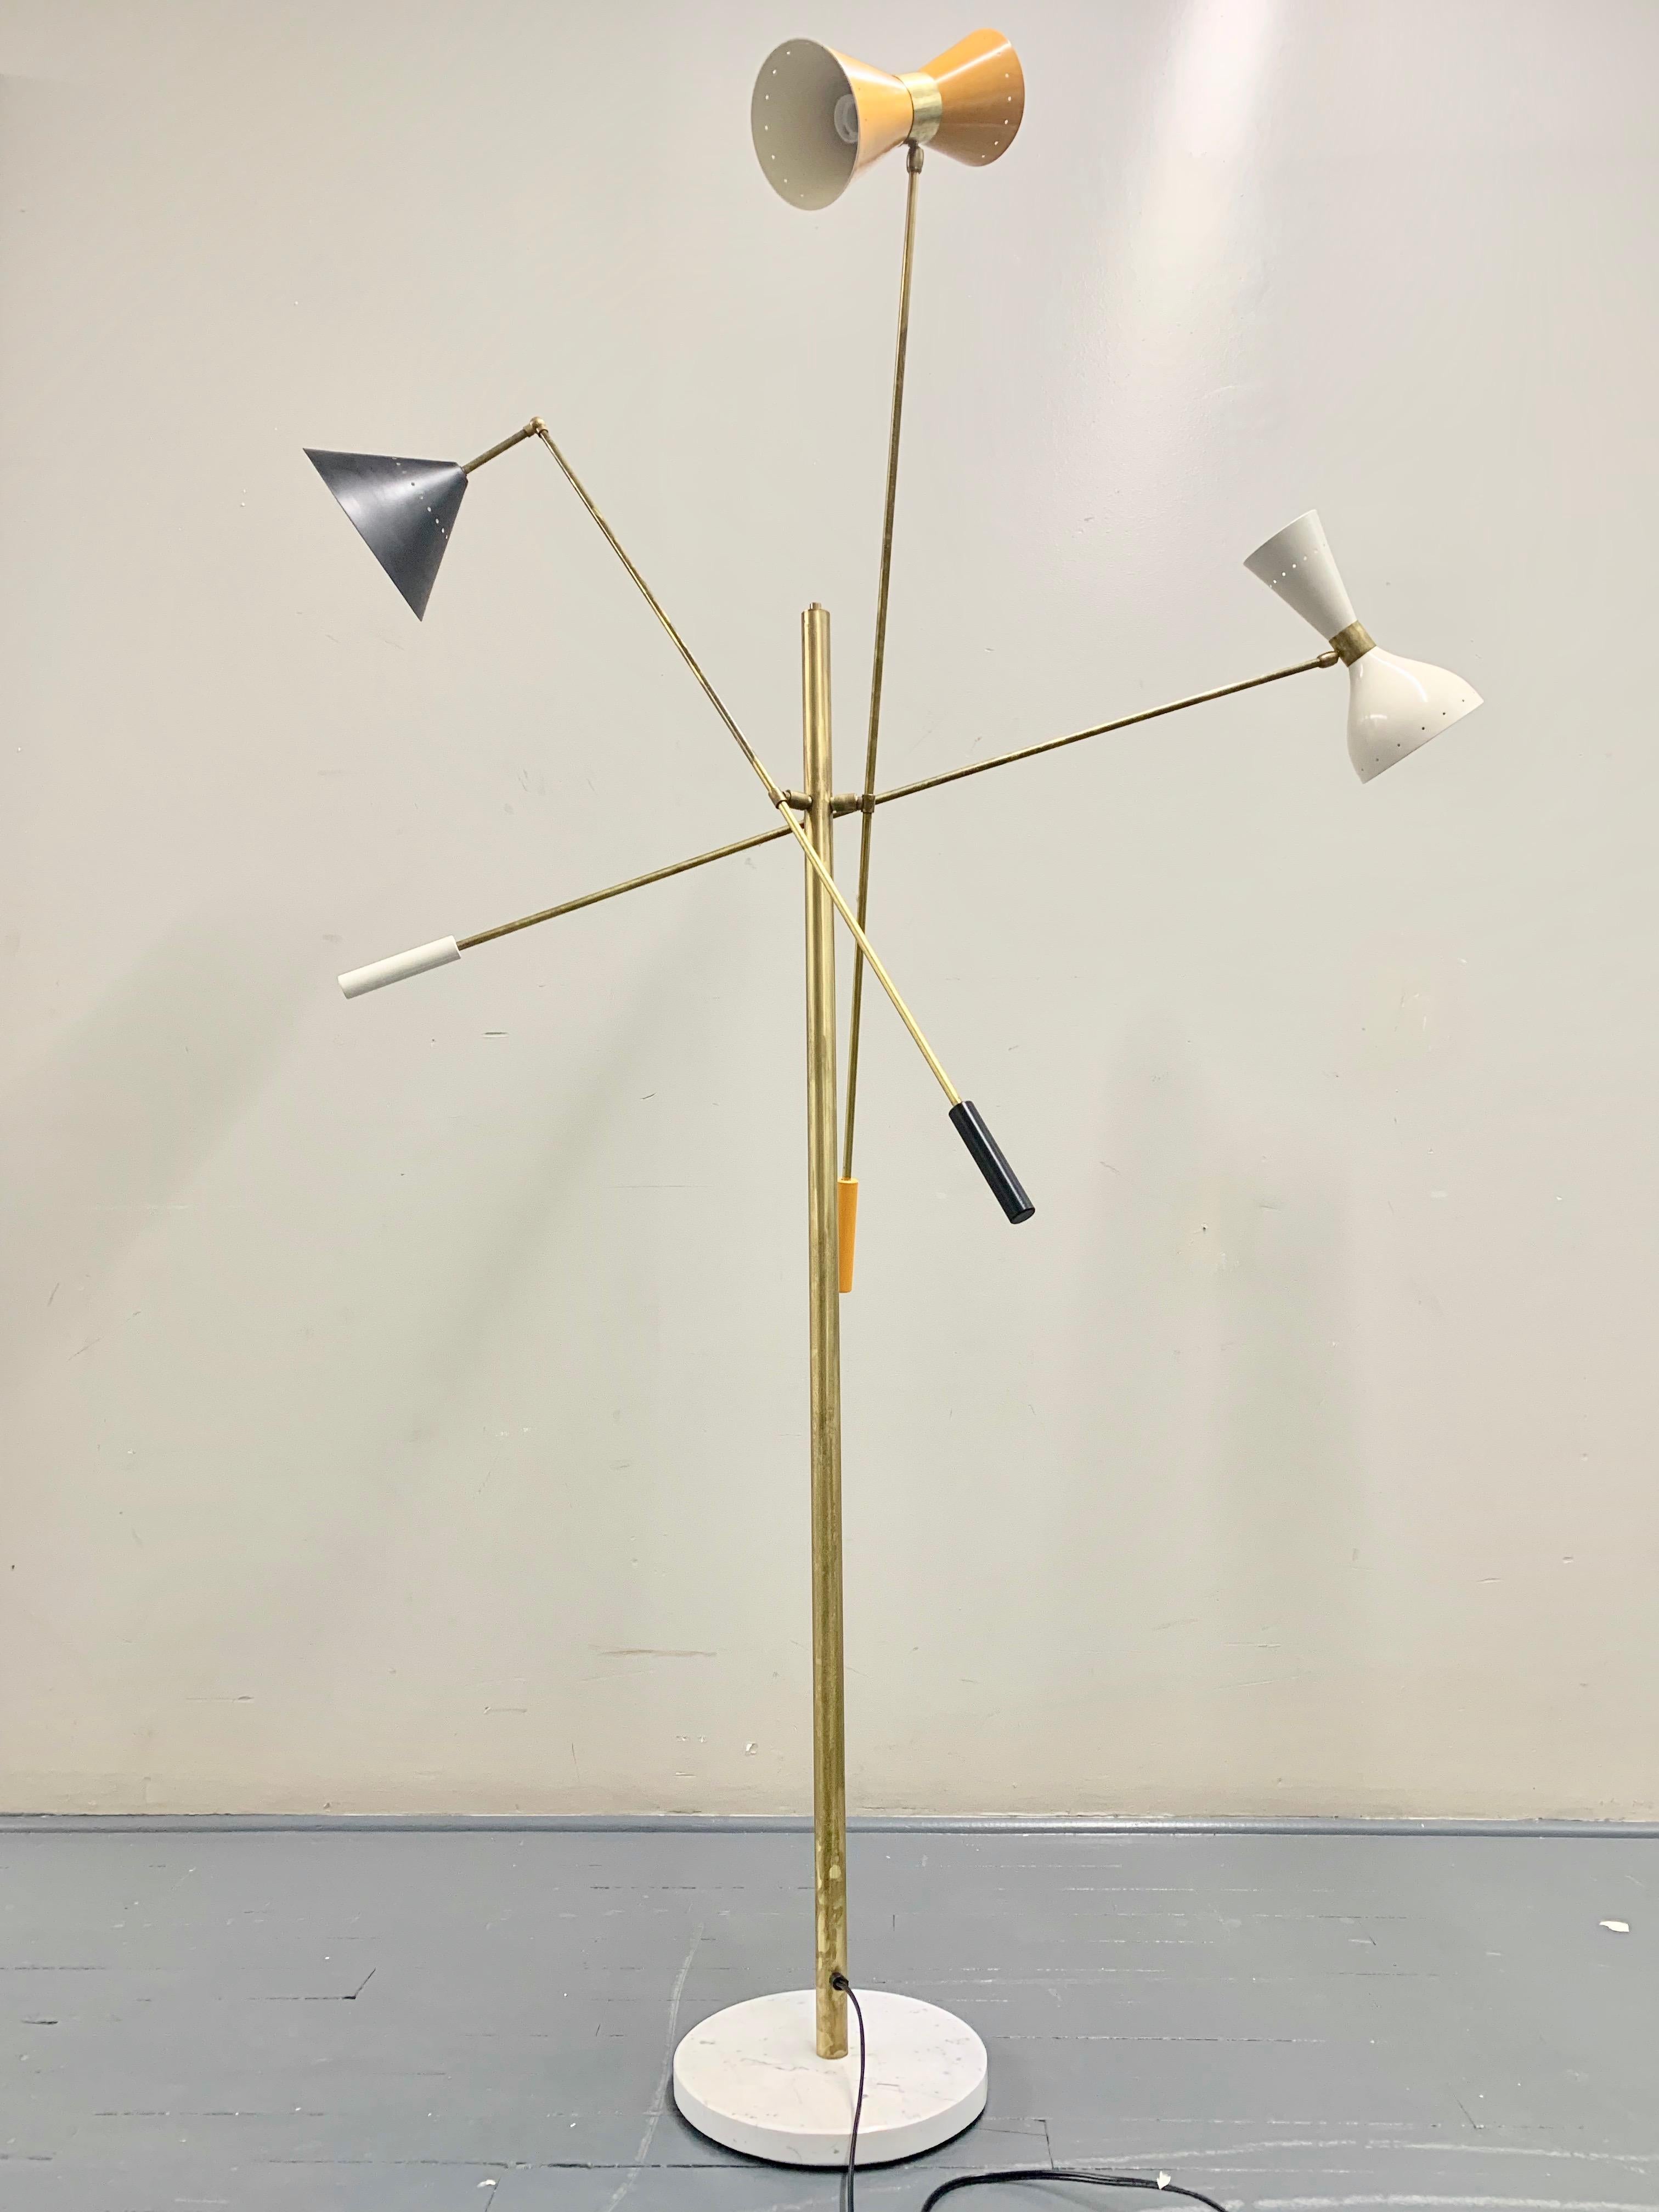 Aluminum Multi-Color Italian Three-Arm Floor Lamp, 'Triennale' Style